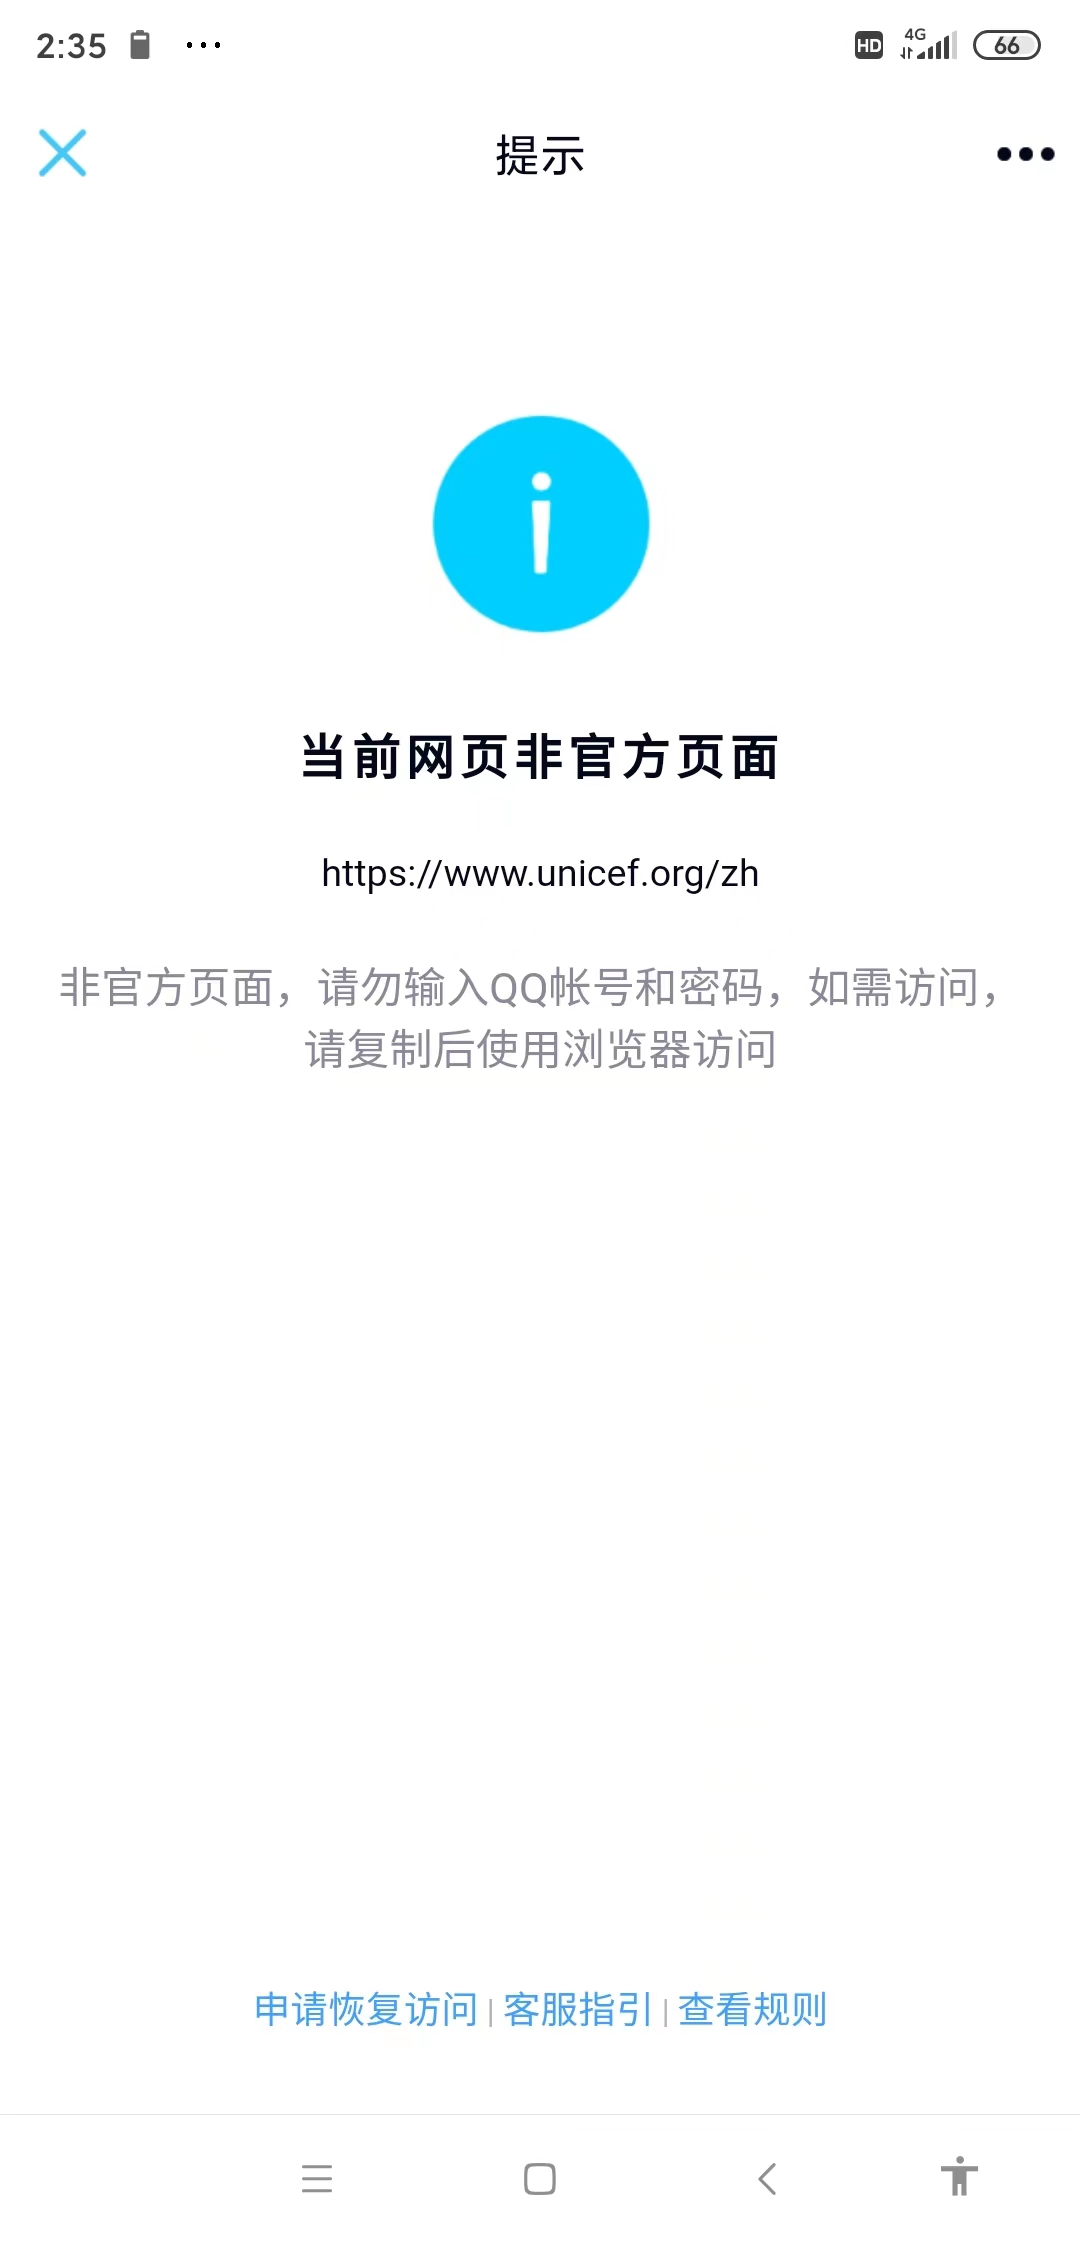 手机 QQ 显示联合国儿童基金会的网站是“非官方页面”，网址是 www.unicef.org